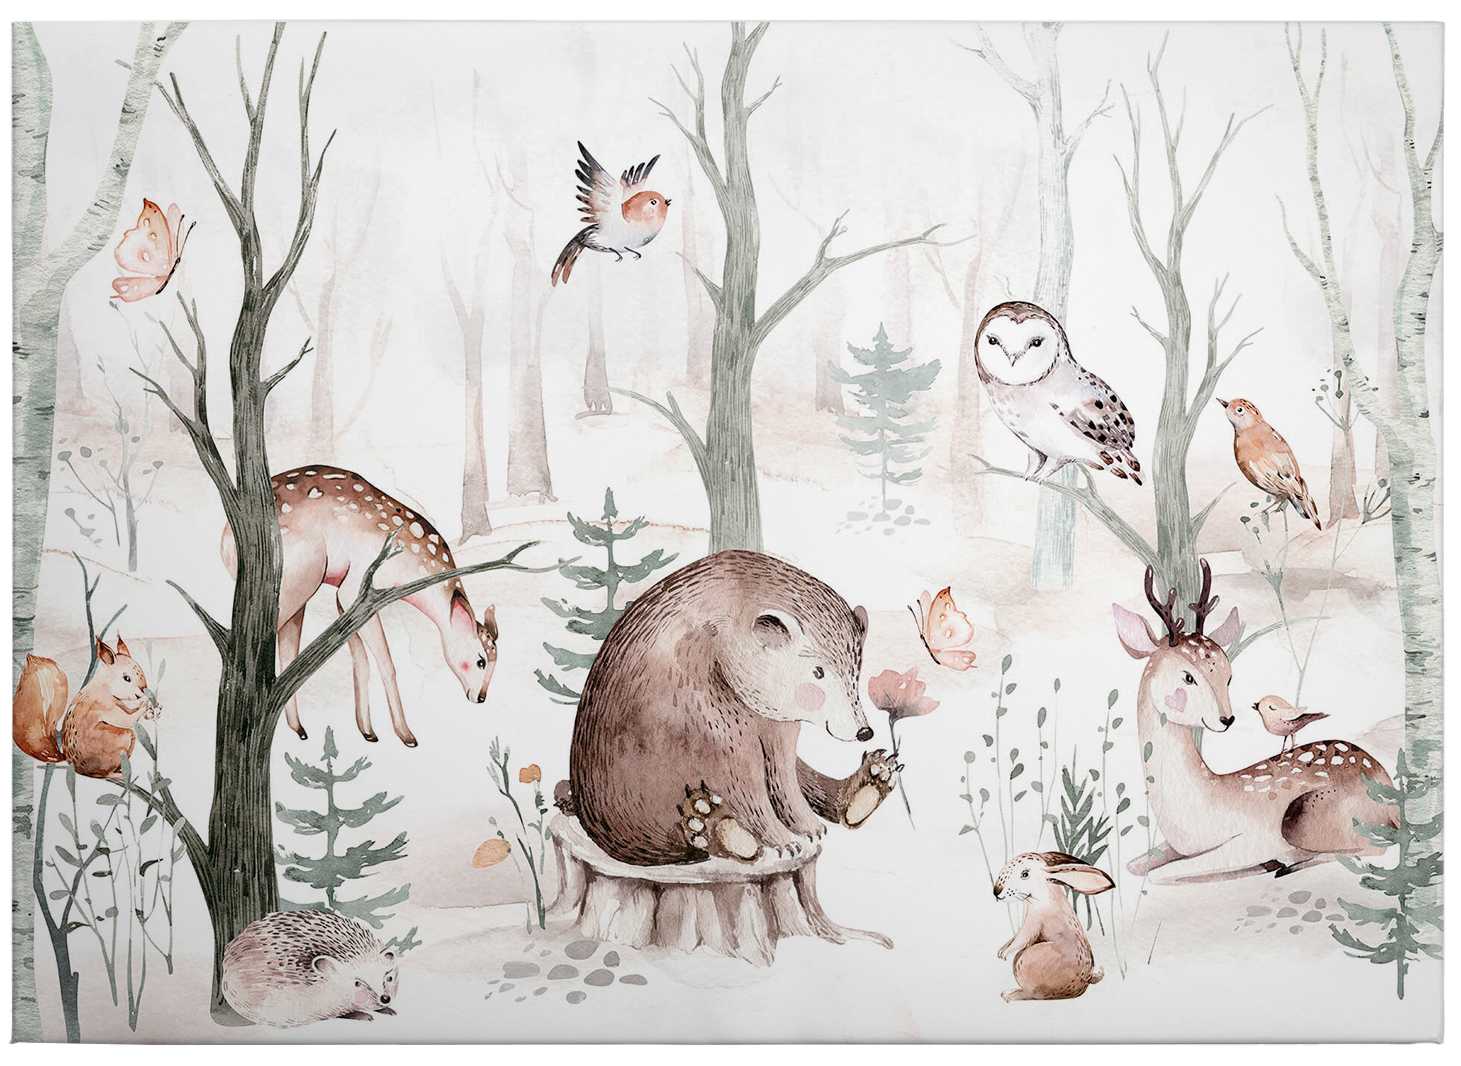             Canvas print forest animals watercolour motif by Kvilis
        